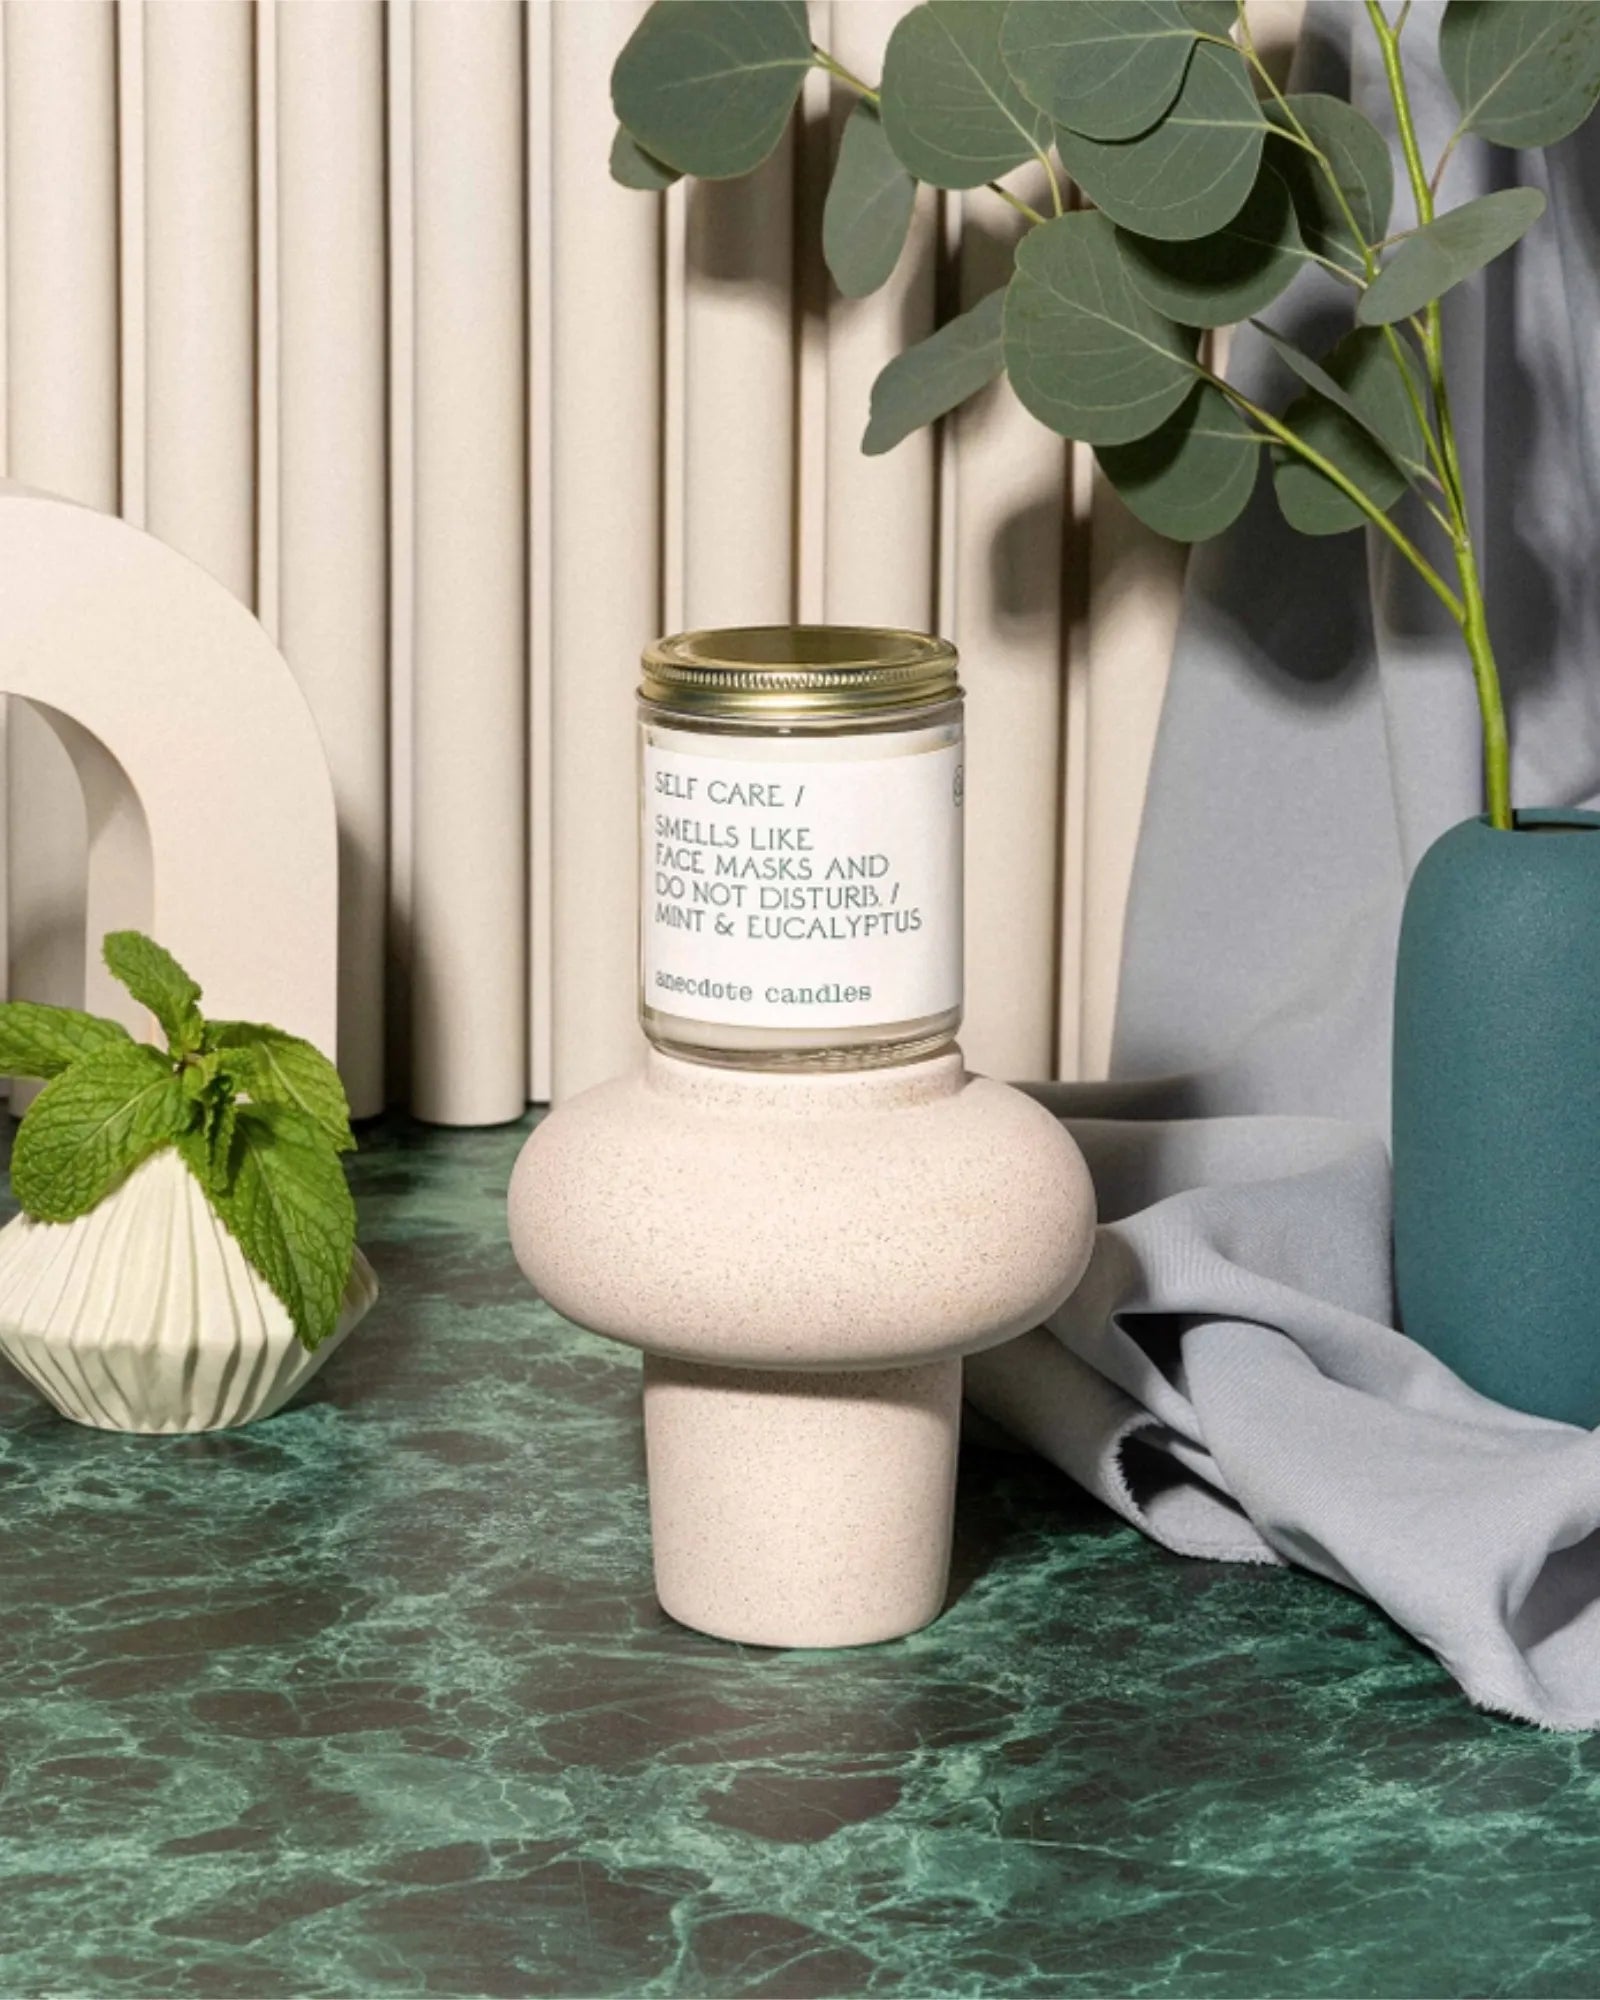 Self Care (Mint & Eucalyptus) 7.8 oz Candle